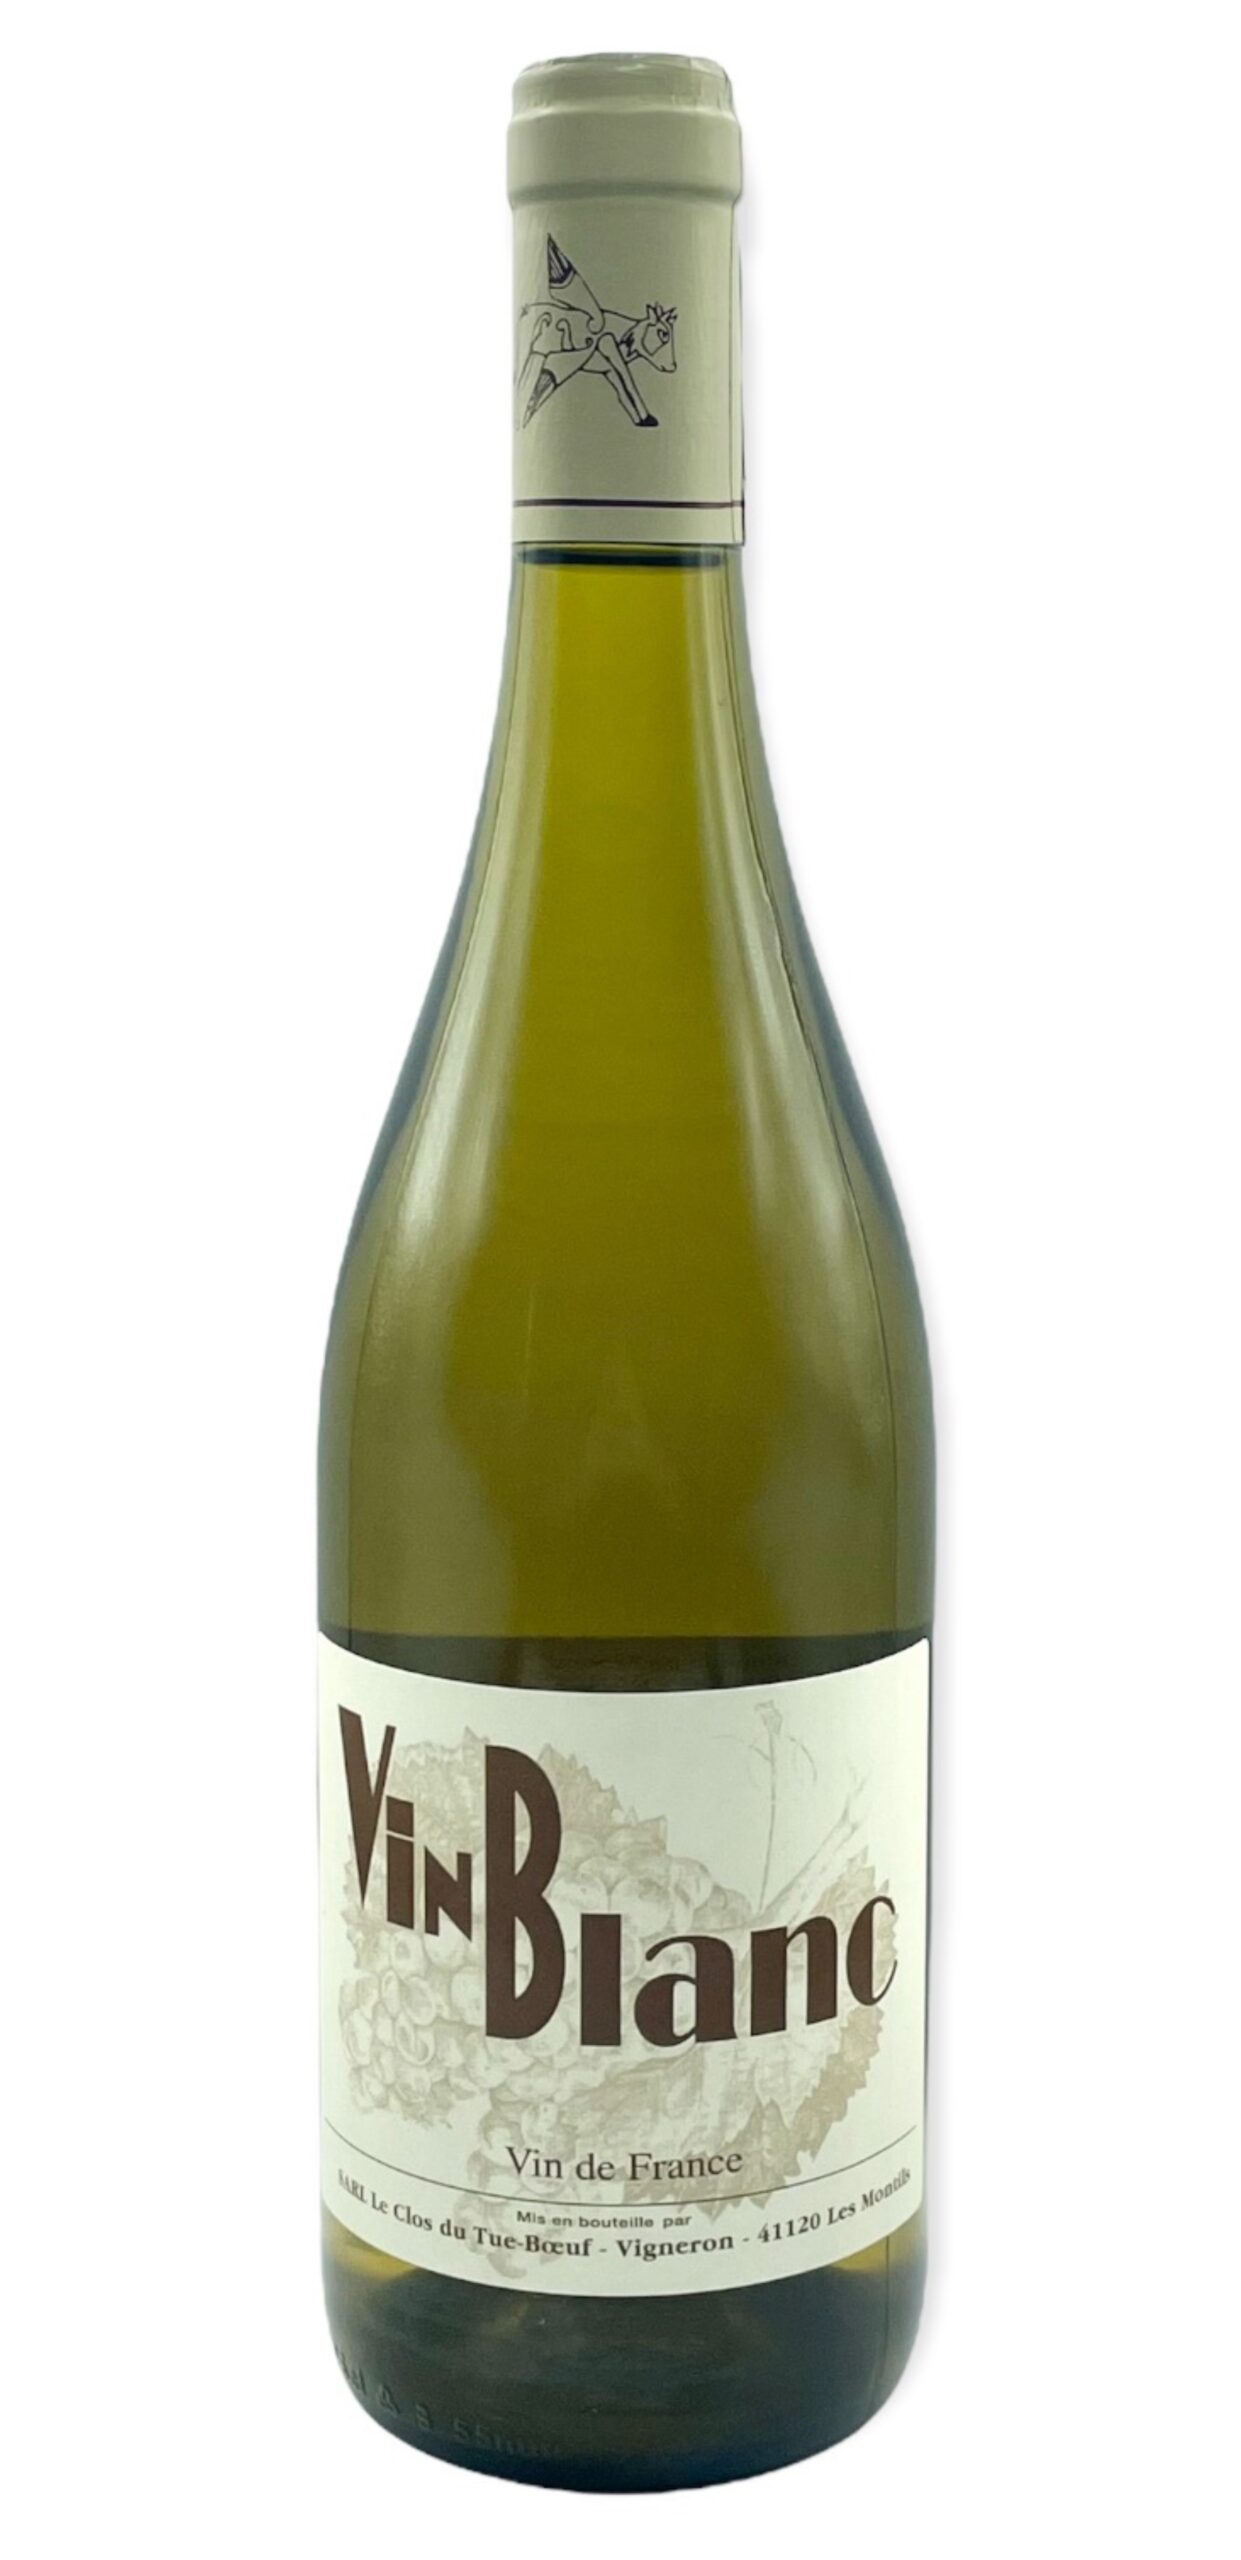 Vin blanc 2020, Domaine du Clos du tue boeuf